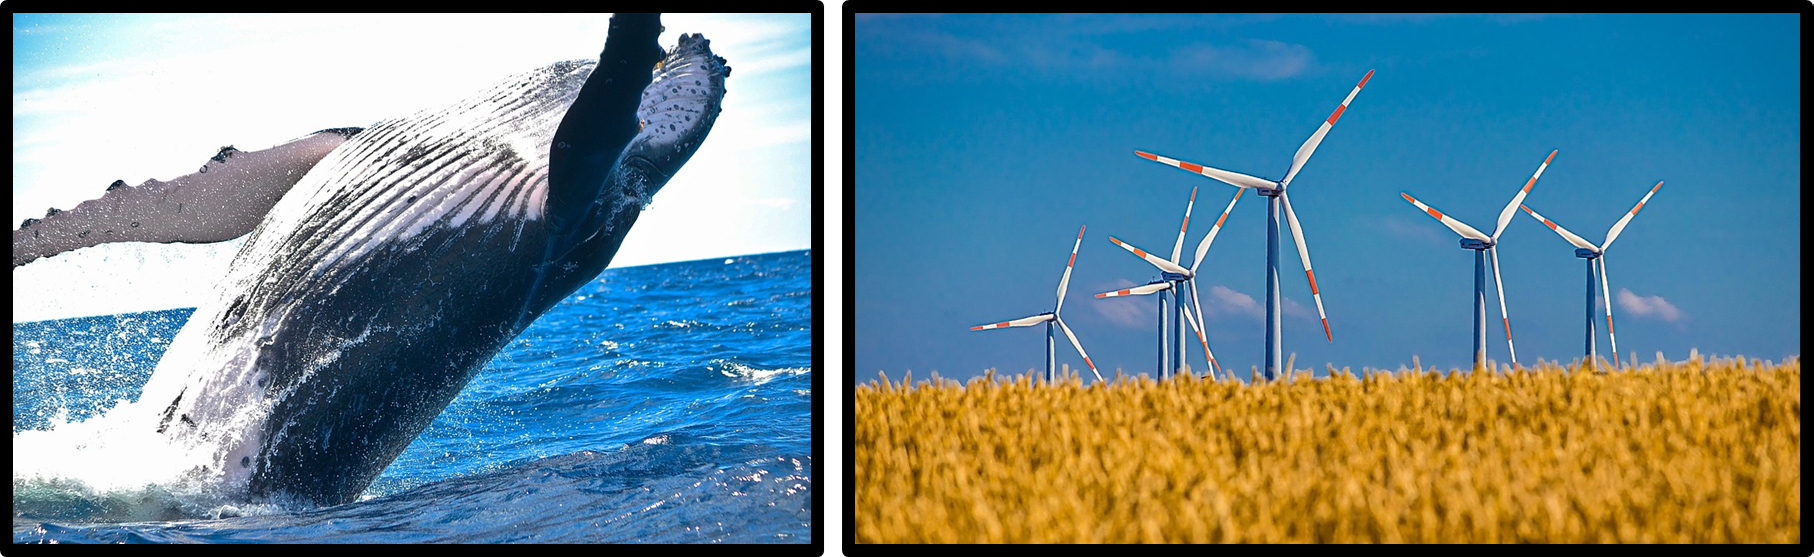 혹등고래와 풍력발전